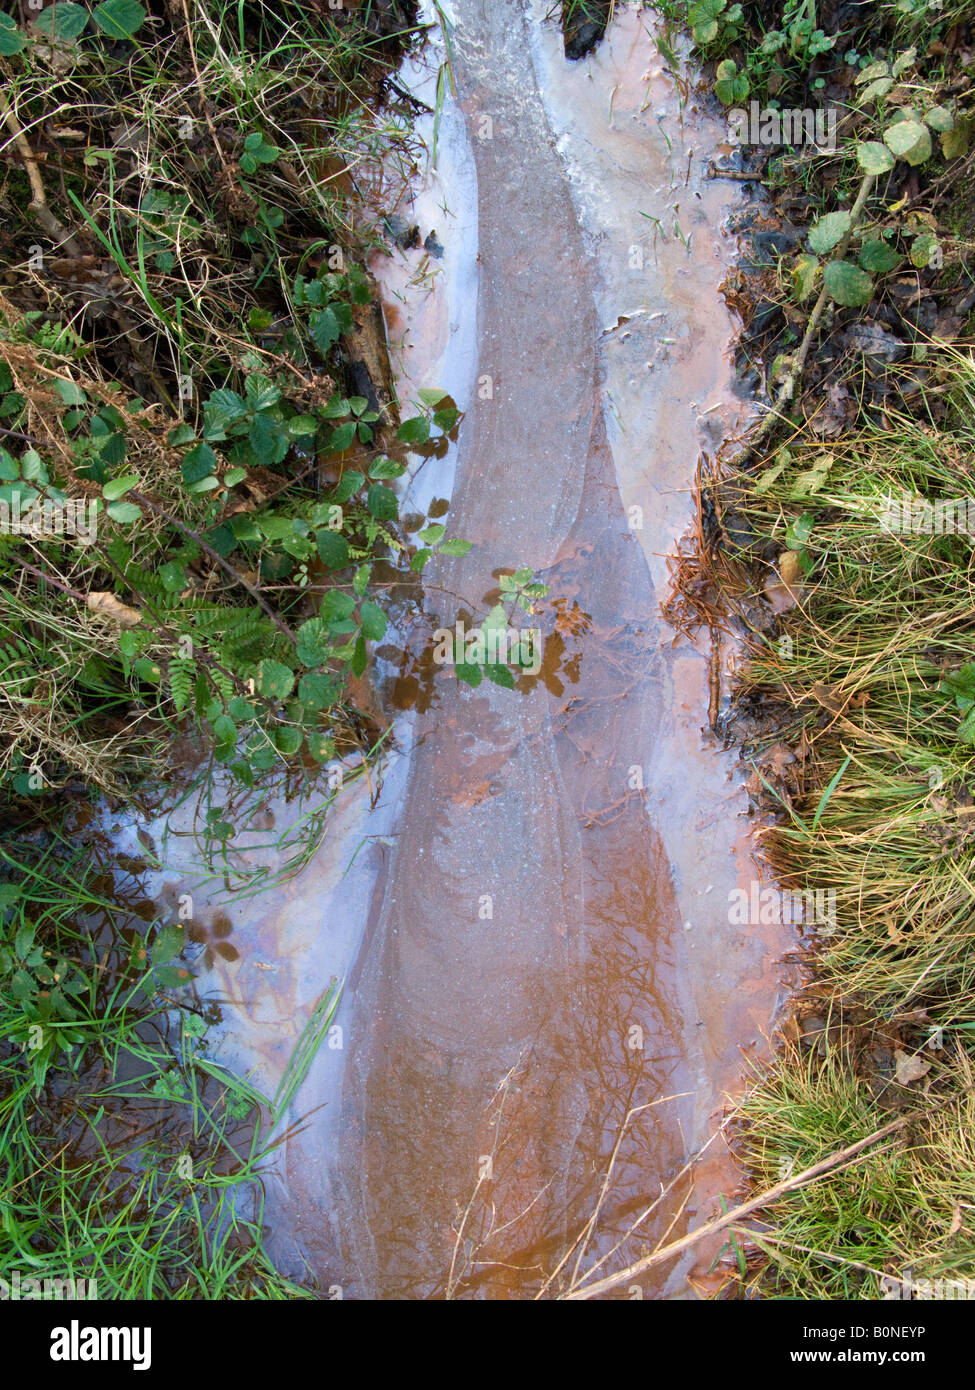 Piscine d'eau / étang / flux lent de flux contaminé pollué par contamination de surface / huile flottante ou graisse. West End Common, près d'Esher, Surrey. ROYAUME-UNI. Banque D'Images